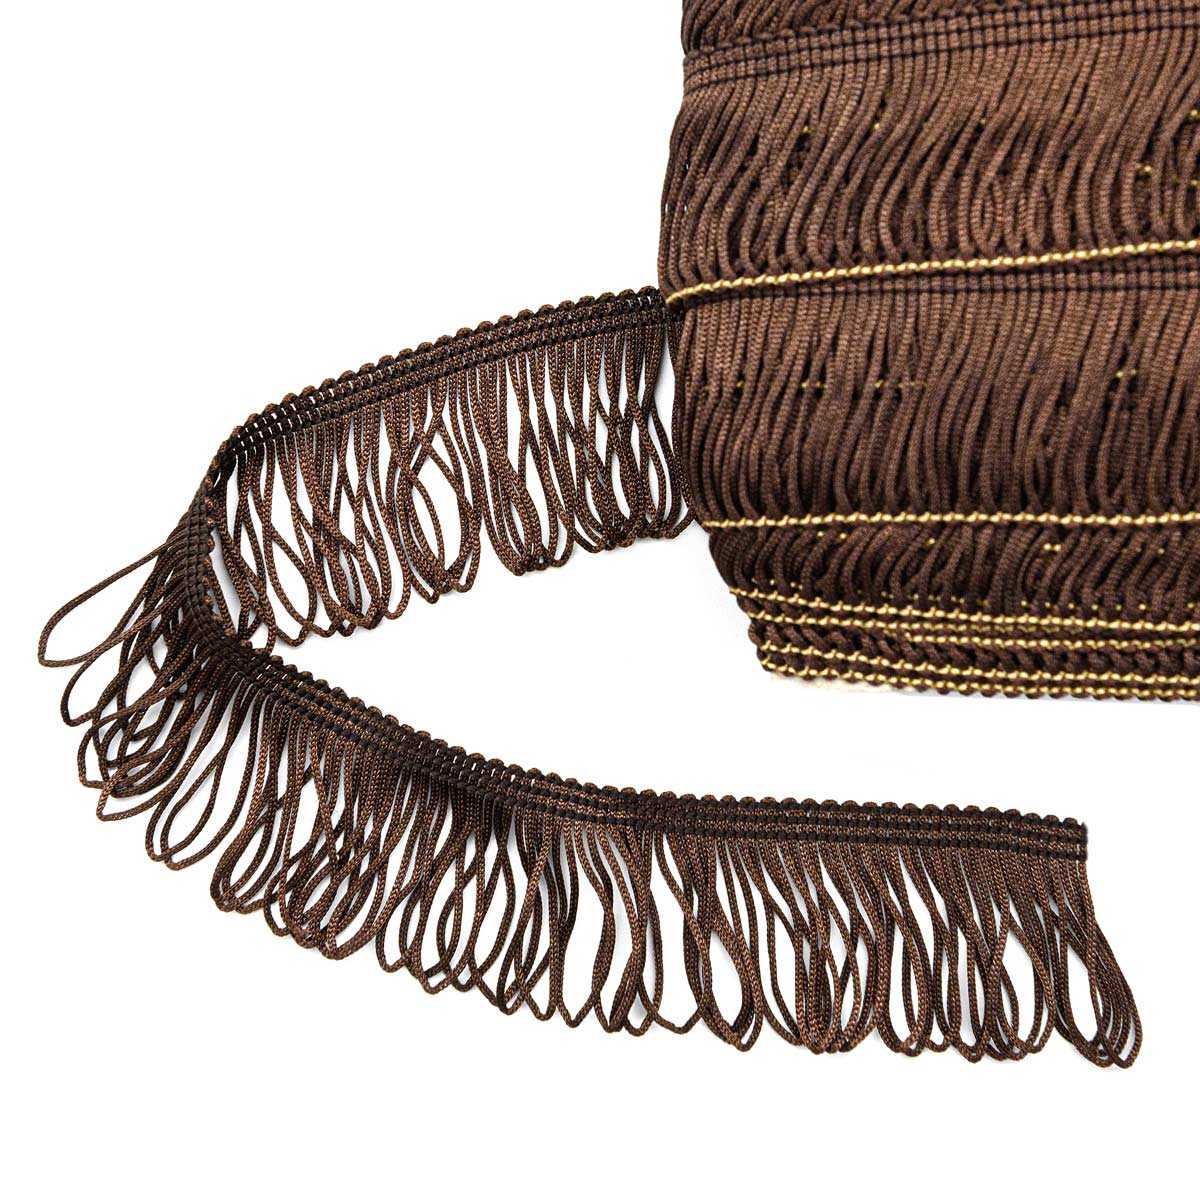 Популярная женская сумочка на пояс, разновидности форм и материалов